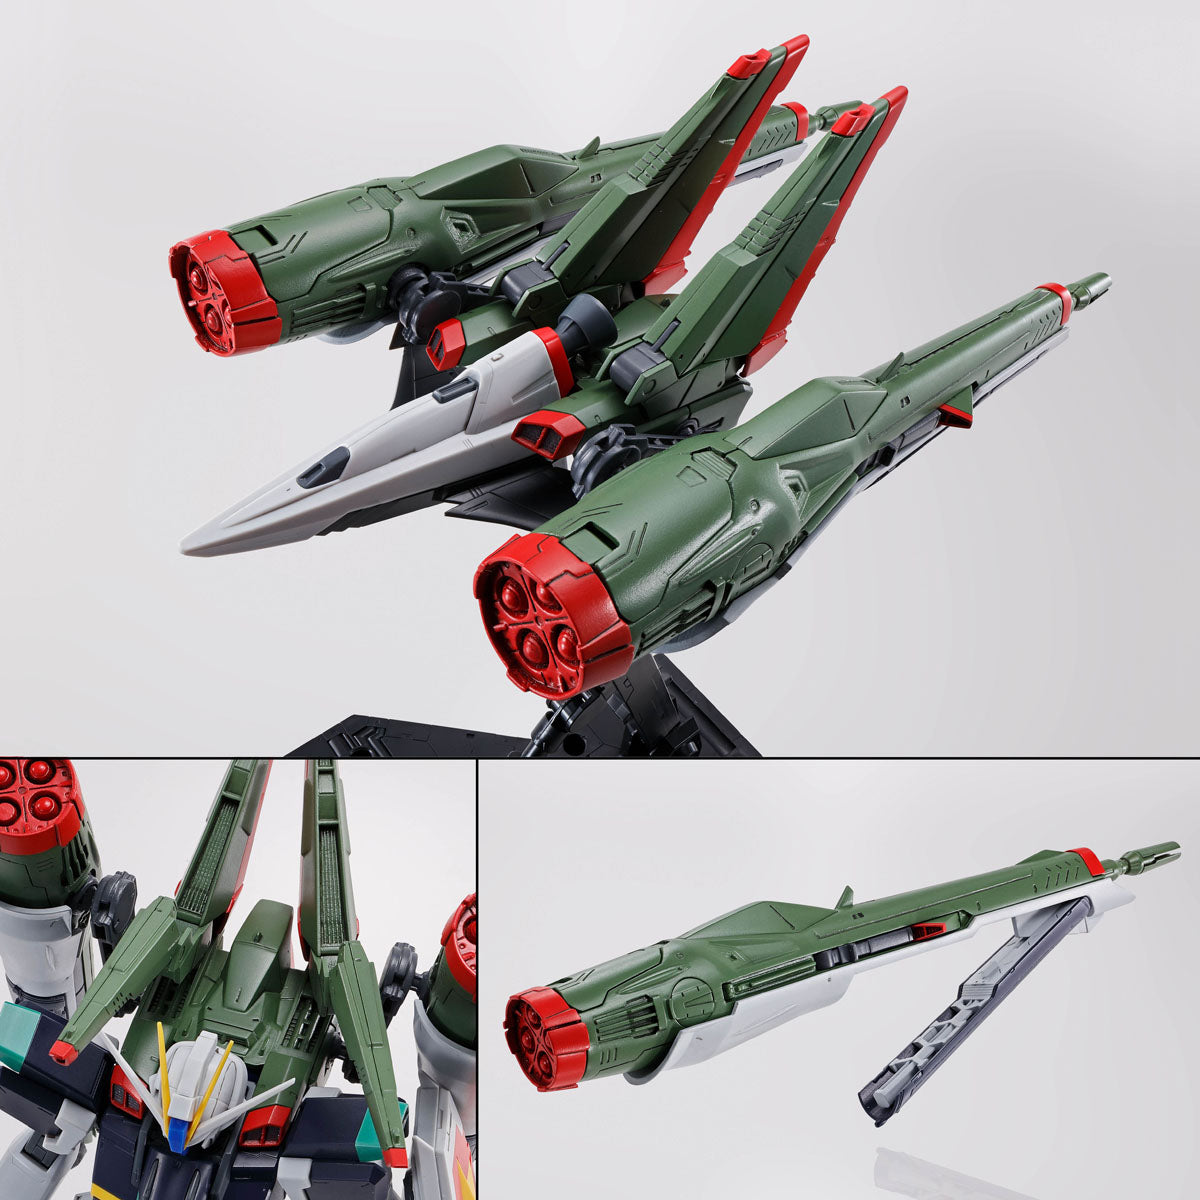 [IN STOCK in HK] MG 1/100 Blast Impulse Gundam